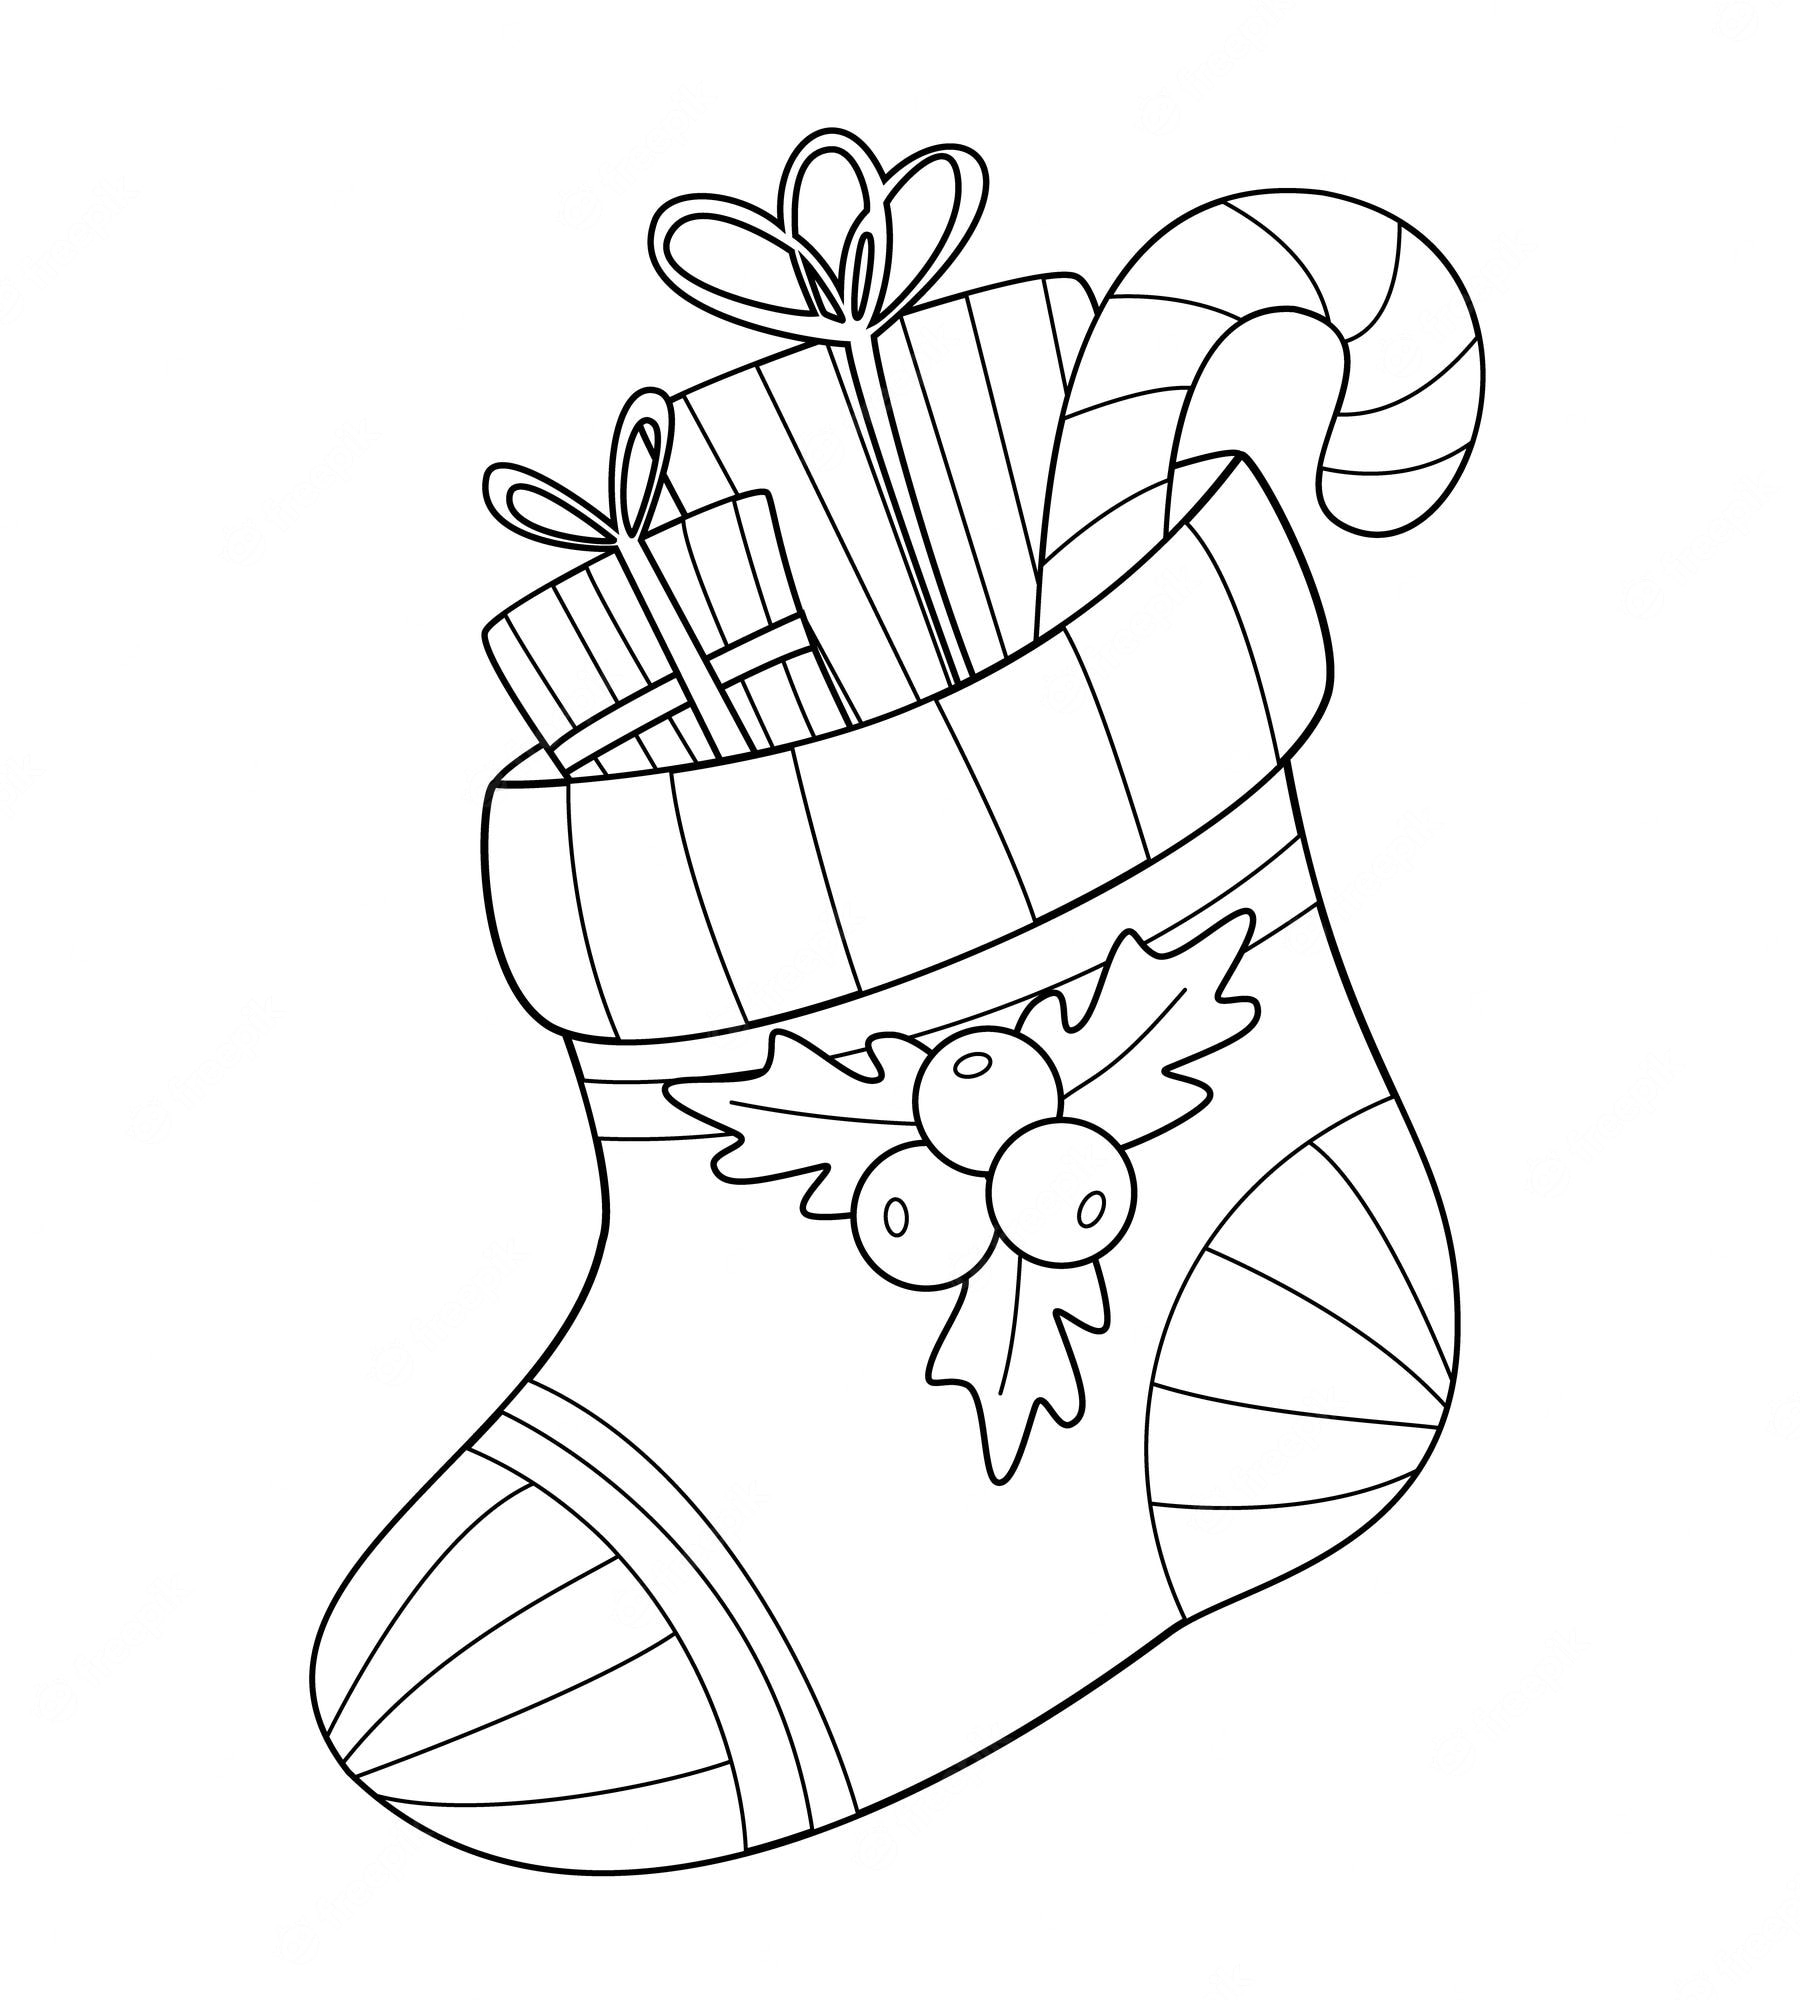 Раскраска с рождественскими носками. Шьем праздничные носочки сами.